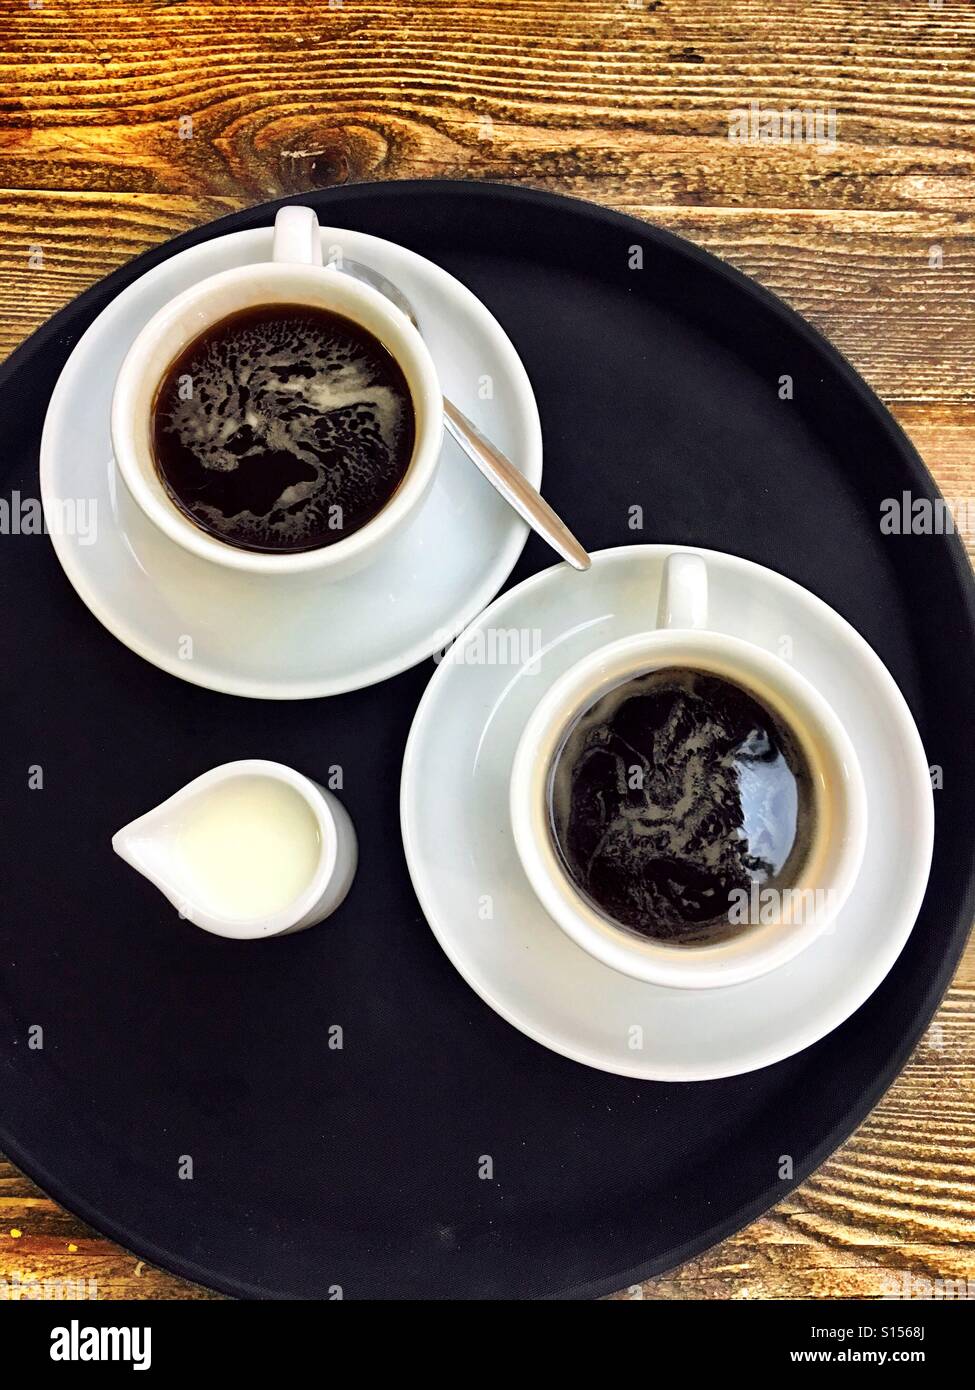 Café pour deux - Americano. De haut en bas tourné de 2 cafés noirs sur un plateau rond, noir, avec un petit pot de lait froid Banque D'Images